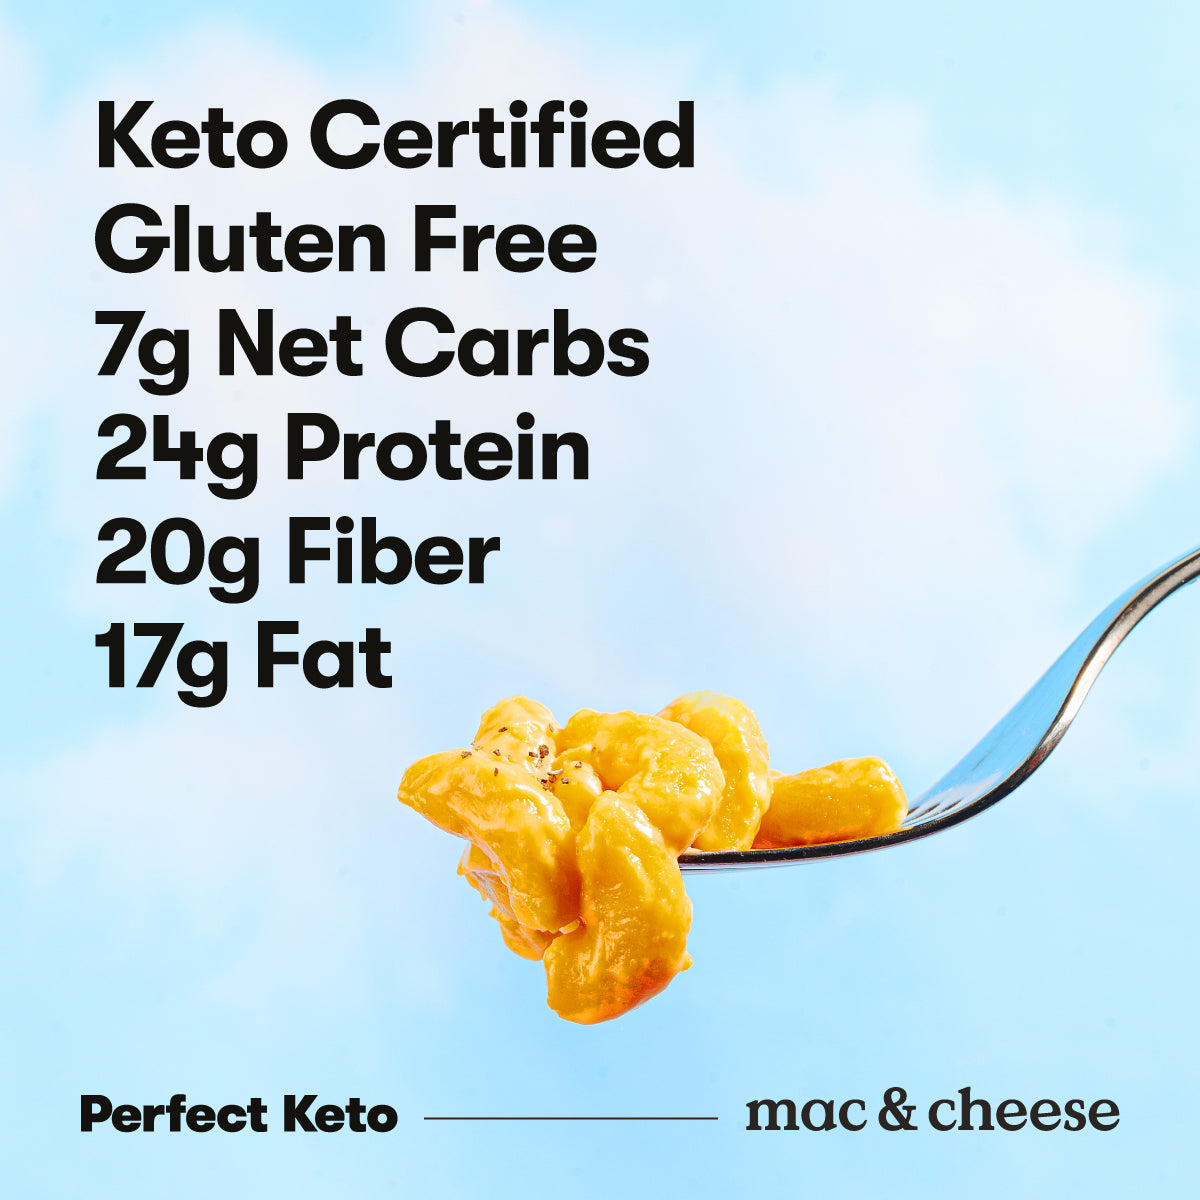 Keto Mac & Cheese - BYOB